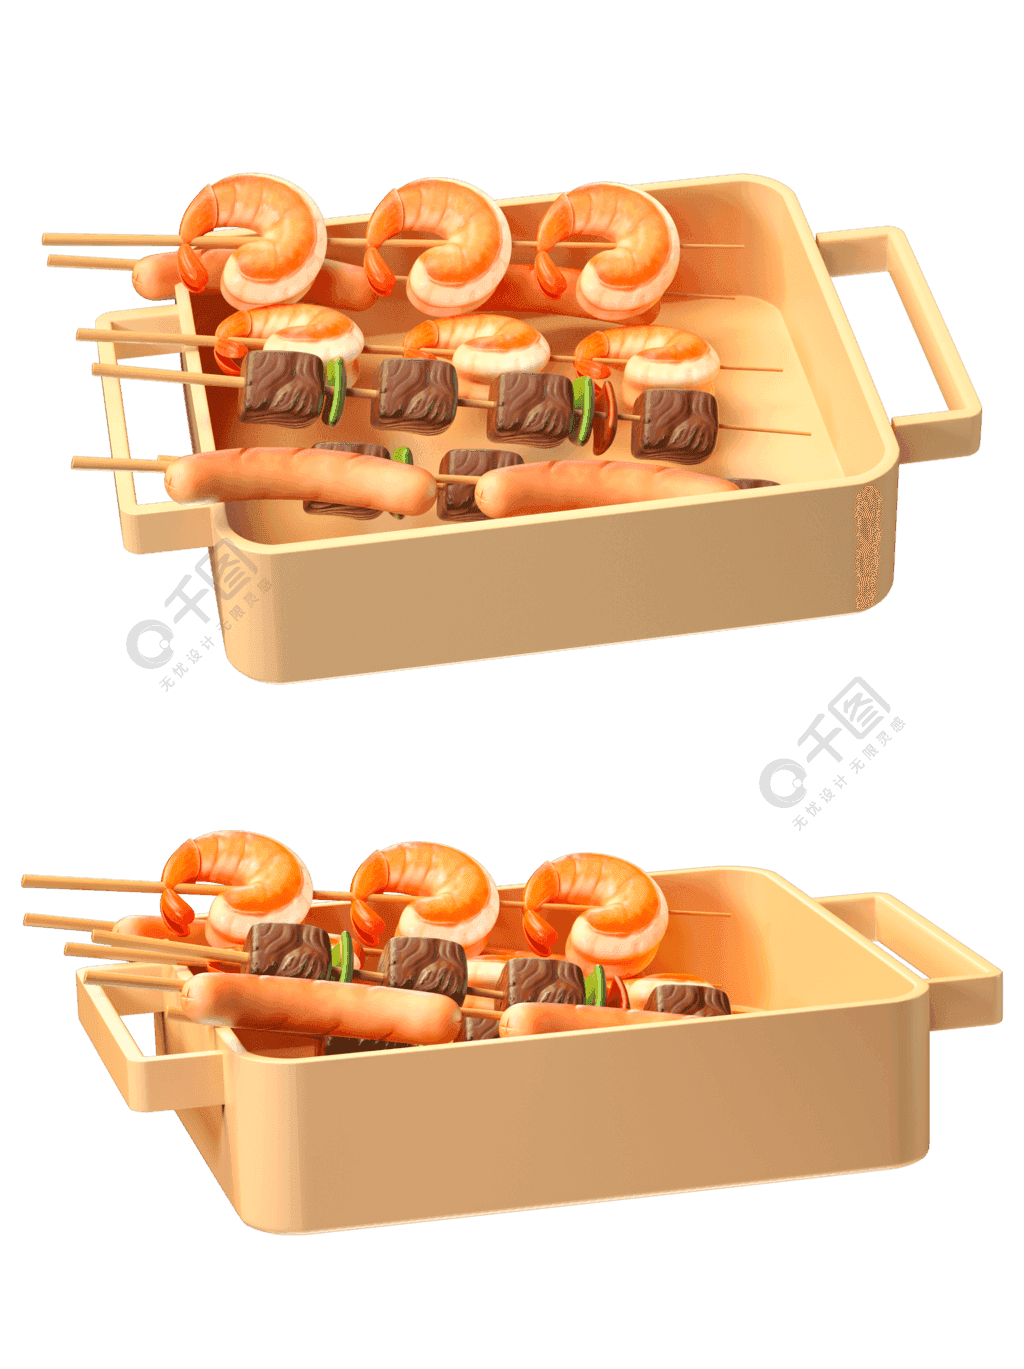 3D夏季夜宵盘装烧烤美食特色小吃模型素材